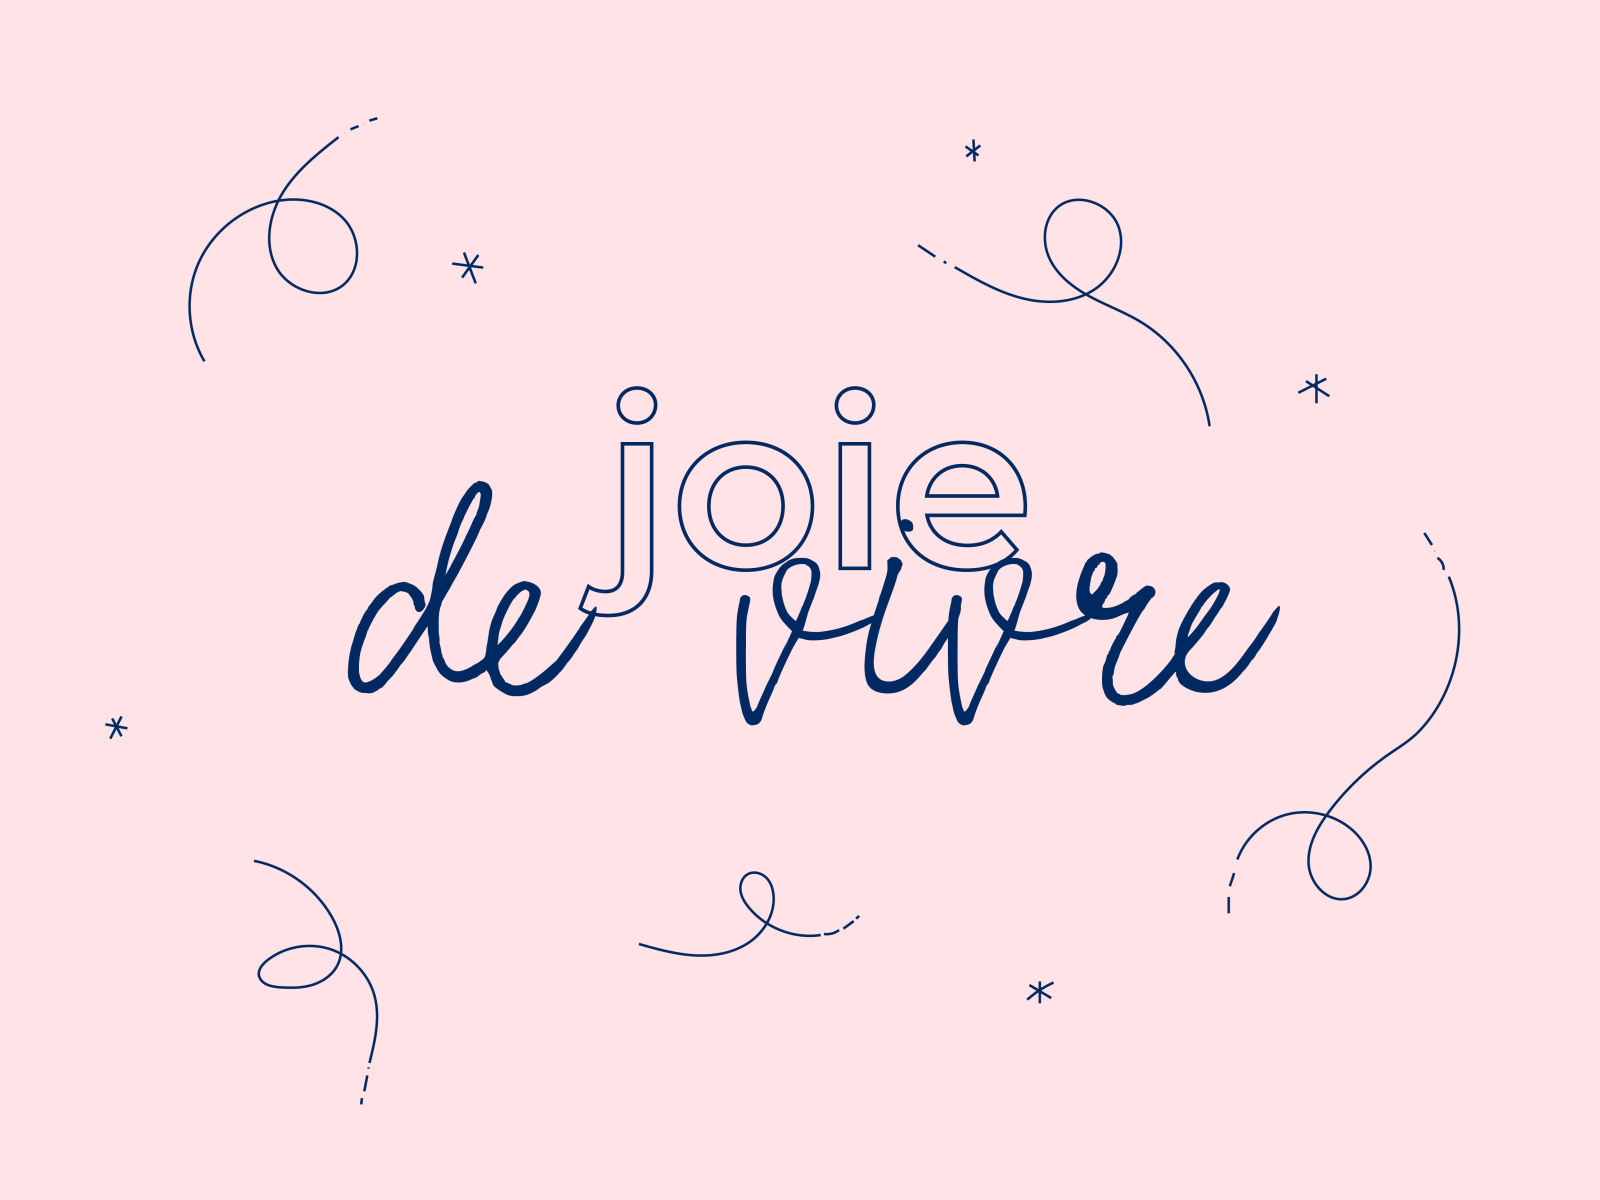 Joie de Vivre by Tess L on Dribbble